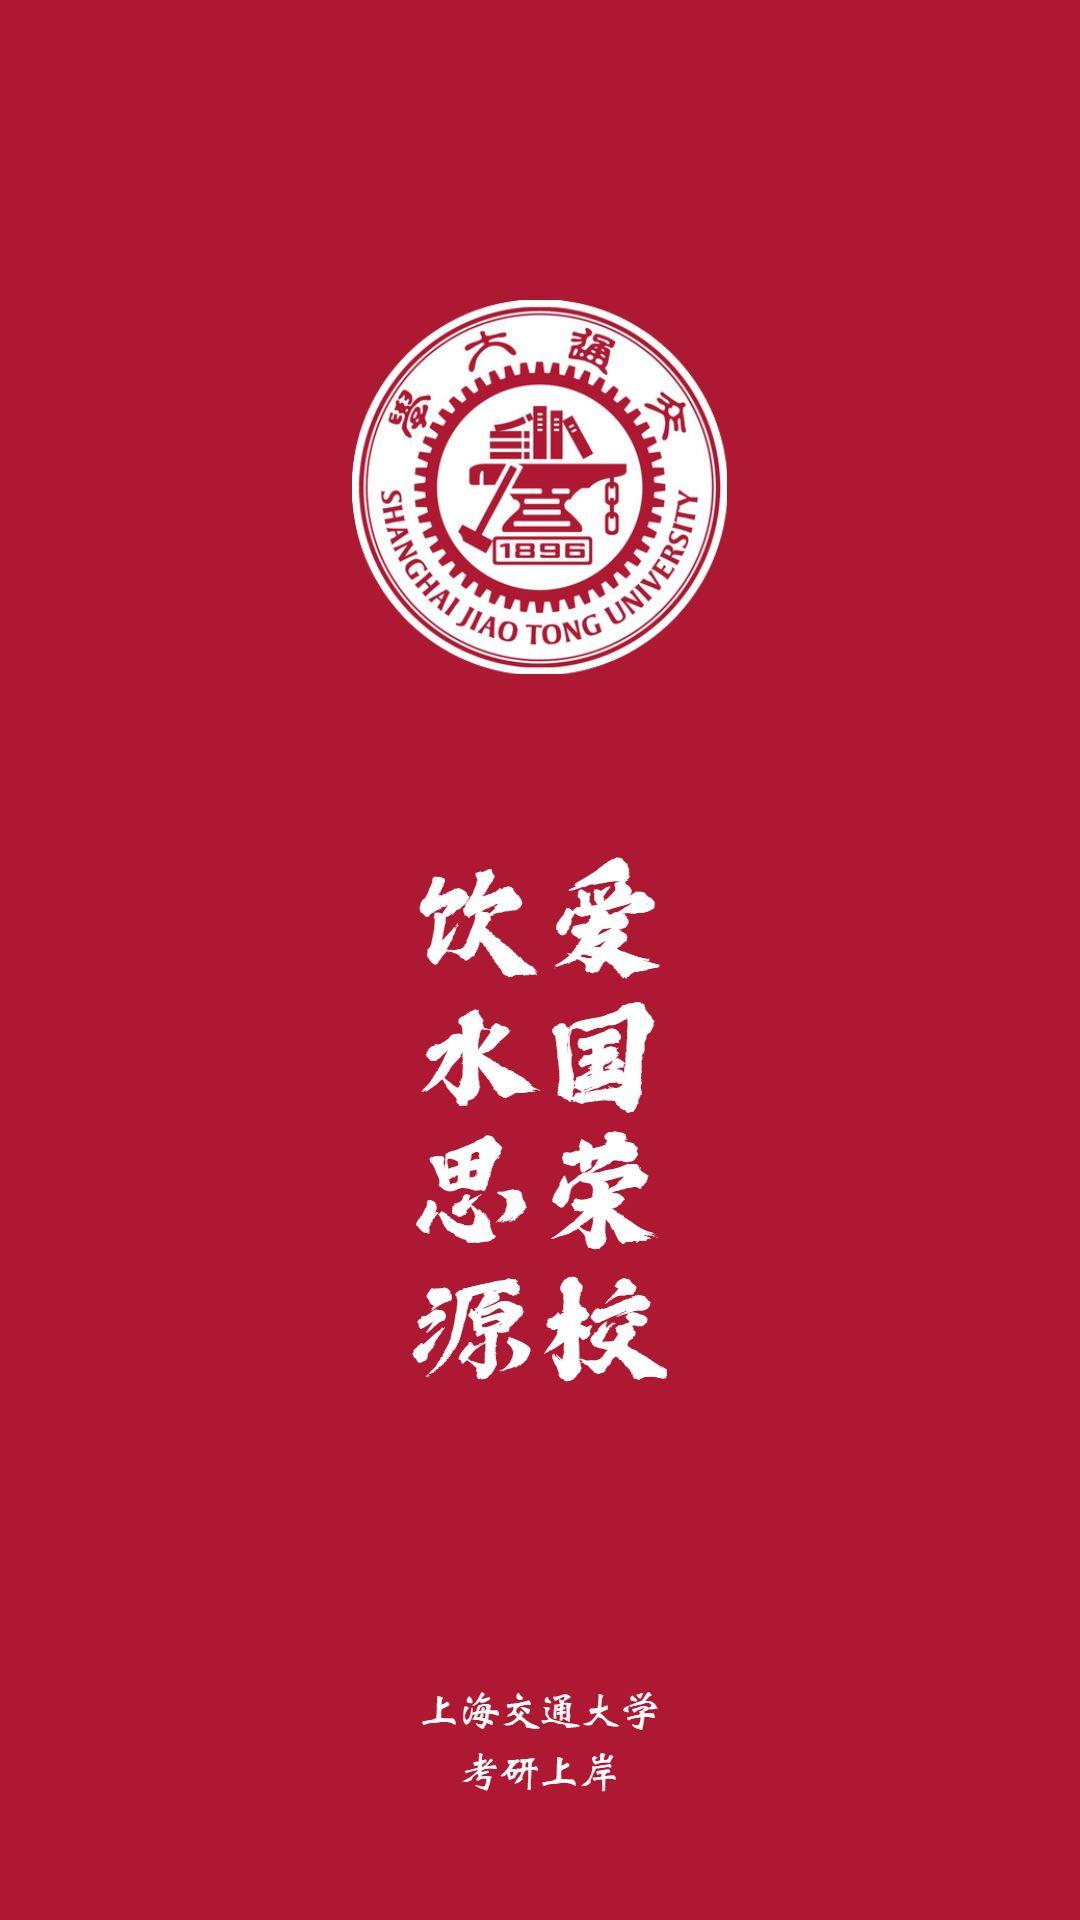 上海交通大学中国海洋大学中国人民大学同济大学复旦大学武汉大学